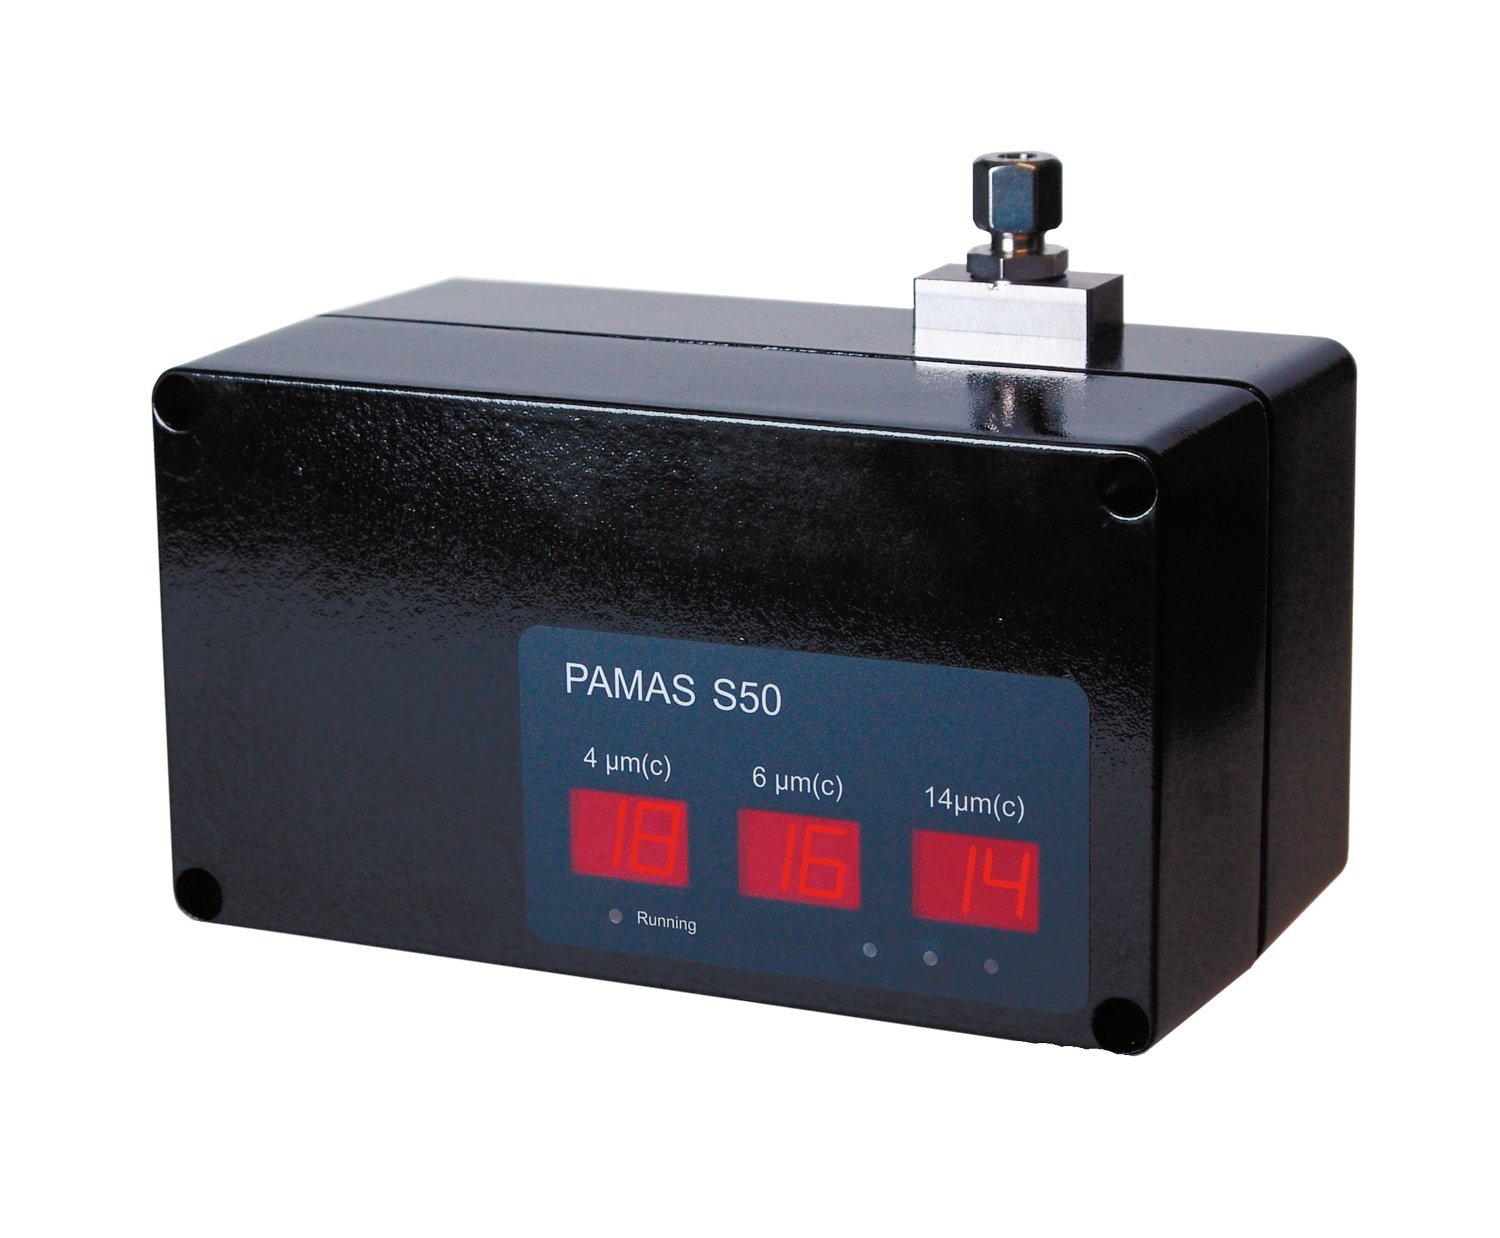 PAMAS S50自动在线式颗粒计数器的图片